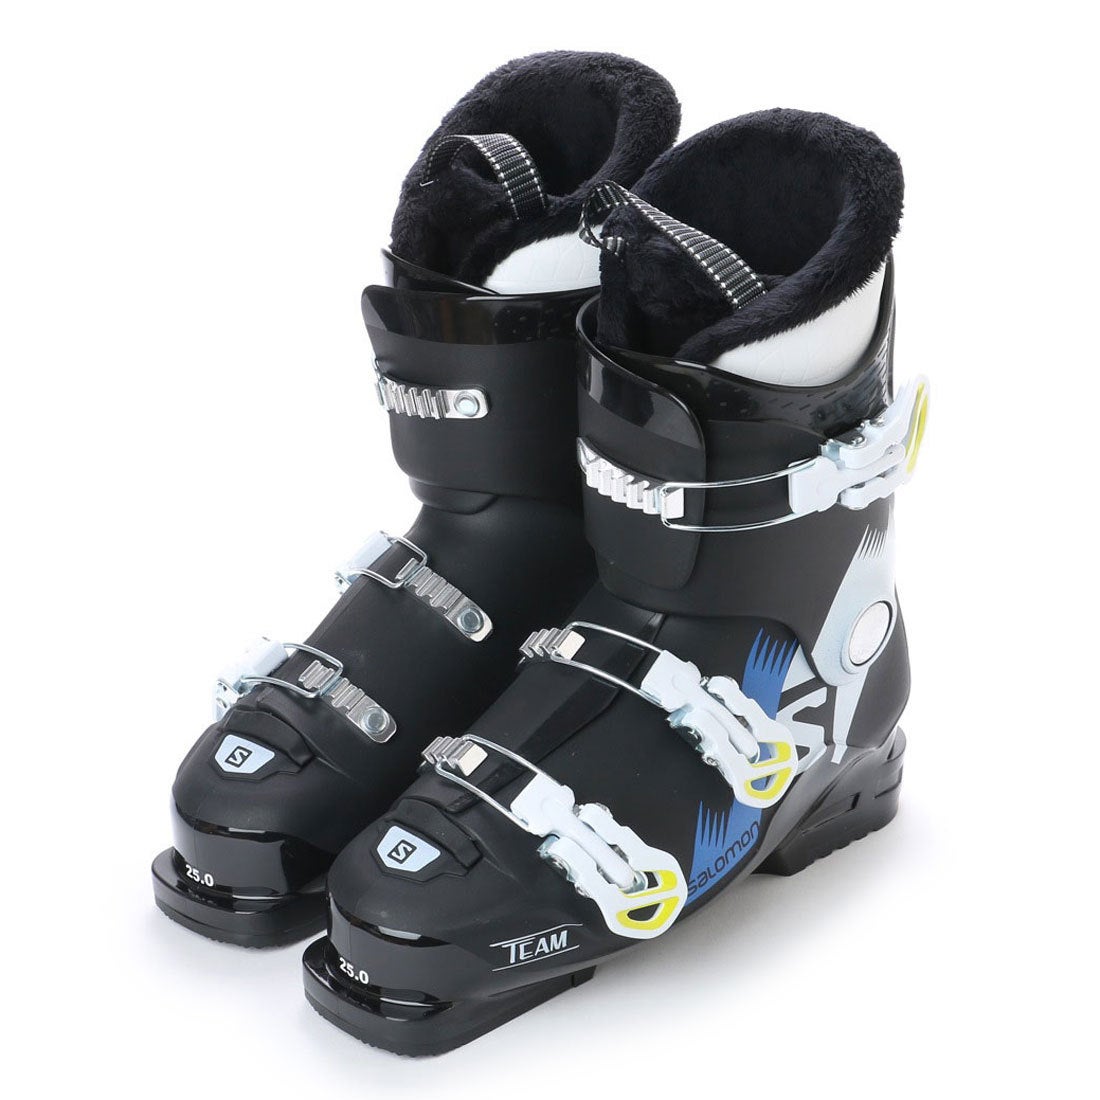 サロモン Salomon ジュニア スキー ブーツ Junior Team T3 L 靴 ファッション通販 ロコンド 自宅で試着 気軽に返品